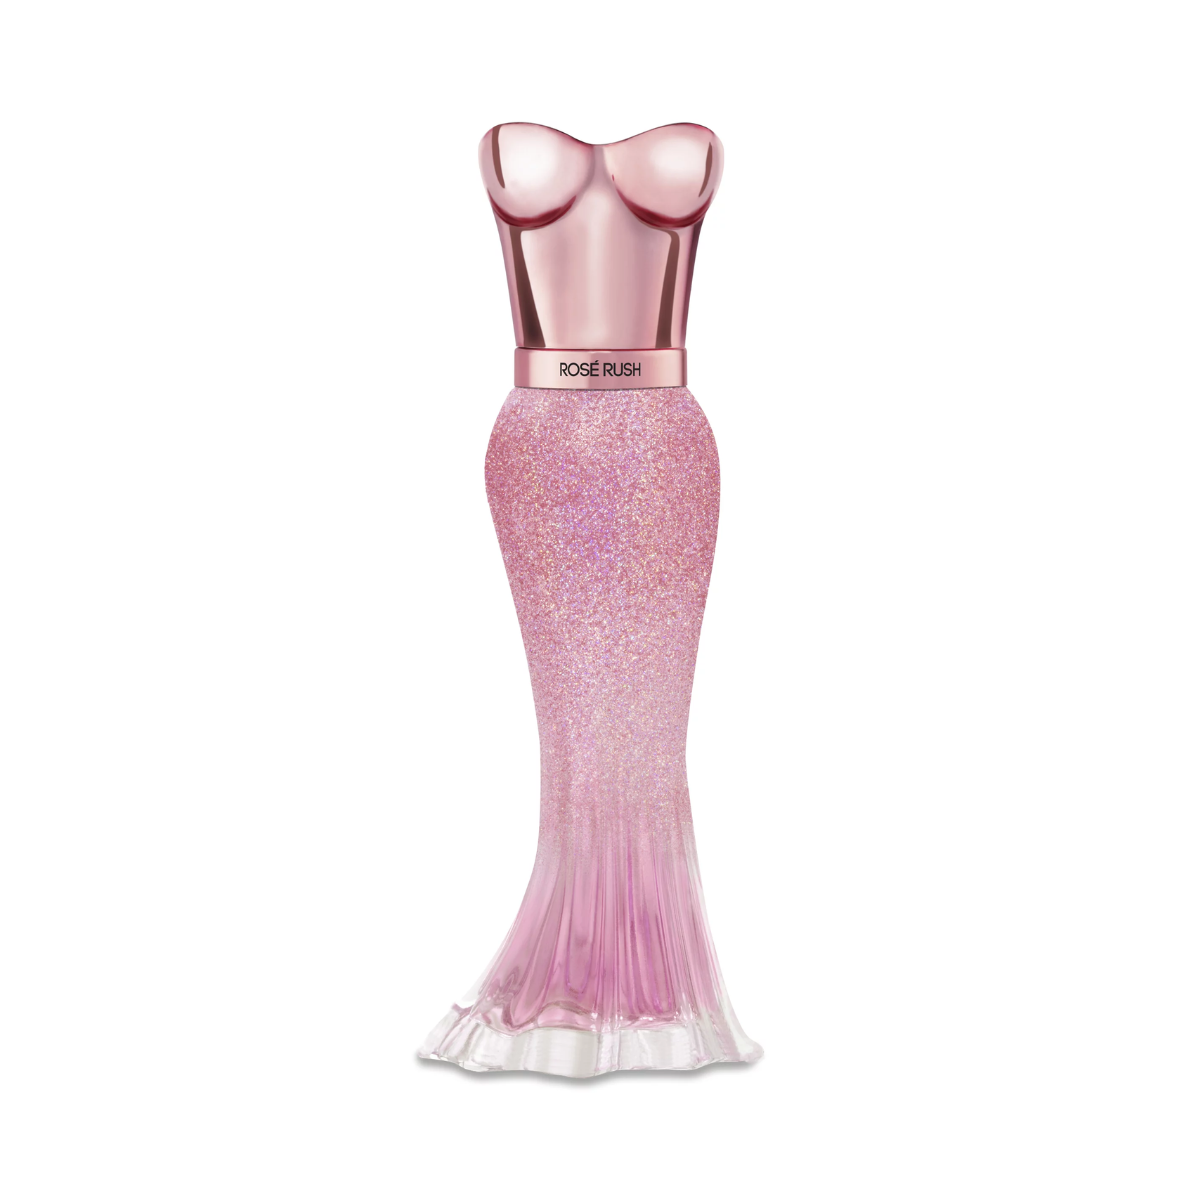 Paris Hilton Rose Rush Eau De Parfum